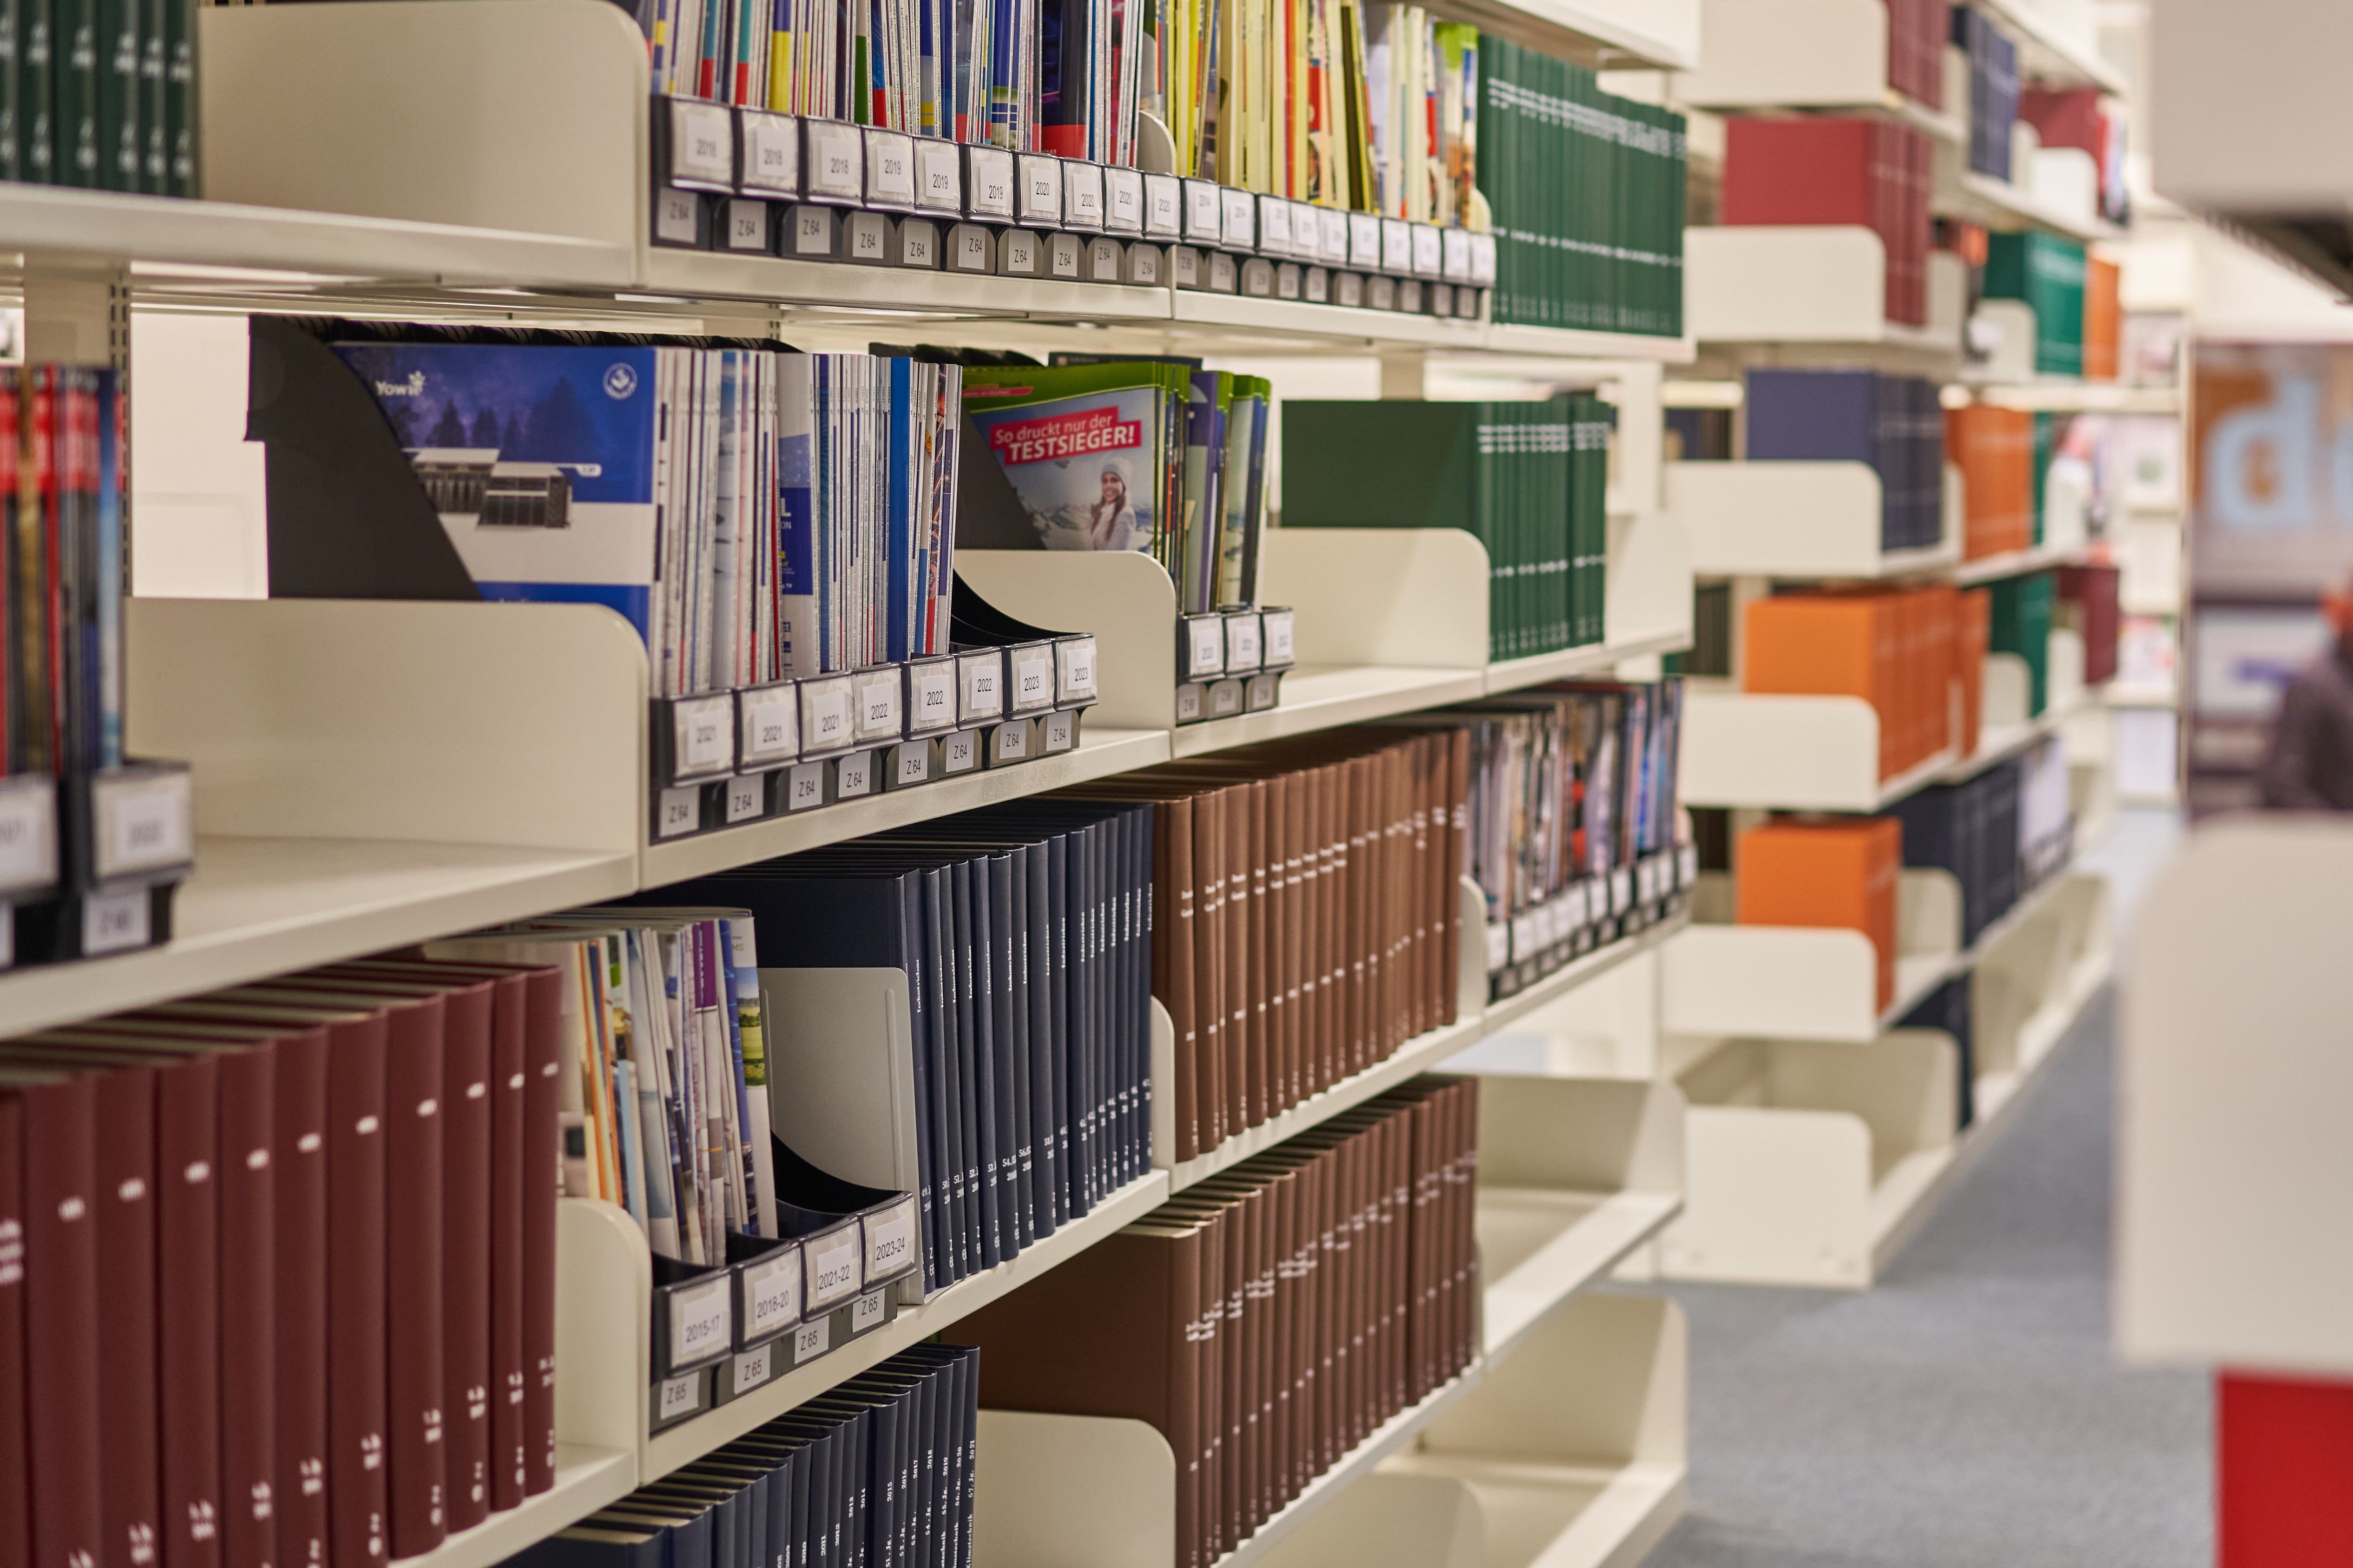 Blick in die Bibliothek: Regalreihen voll mit Schubern, in denen Zeitschriften stehen.